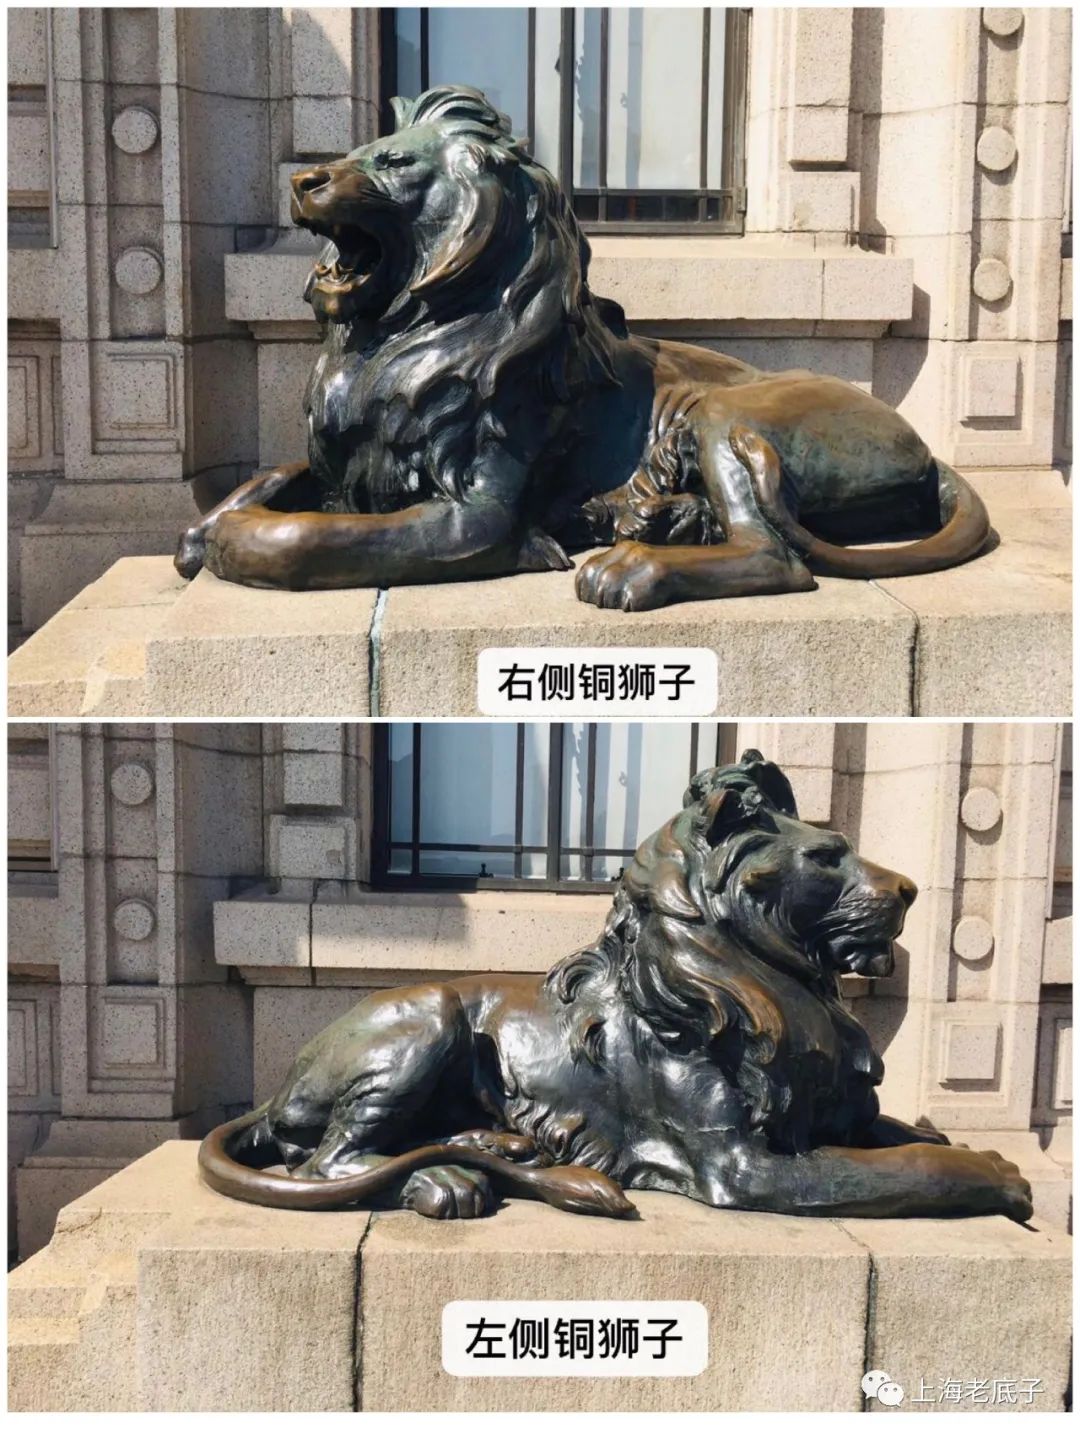 原(远东)香港上海汇丰银行一对铜狮子变迁真相(作者:卢铭安)